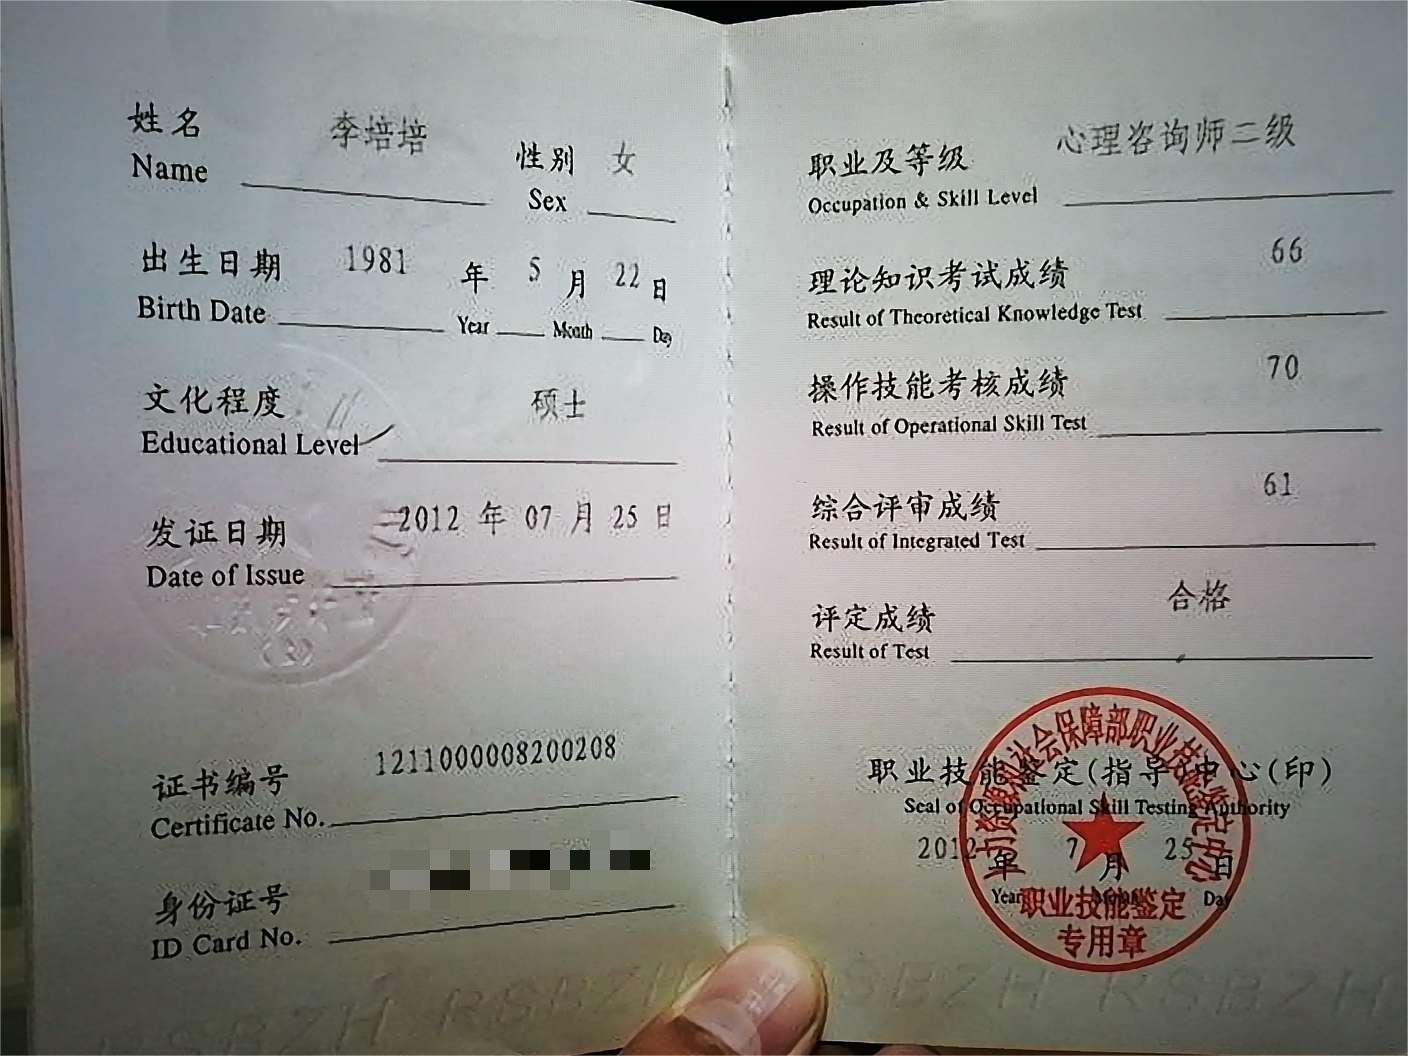 咨询师李培培的职业证书